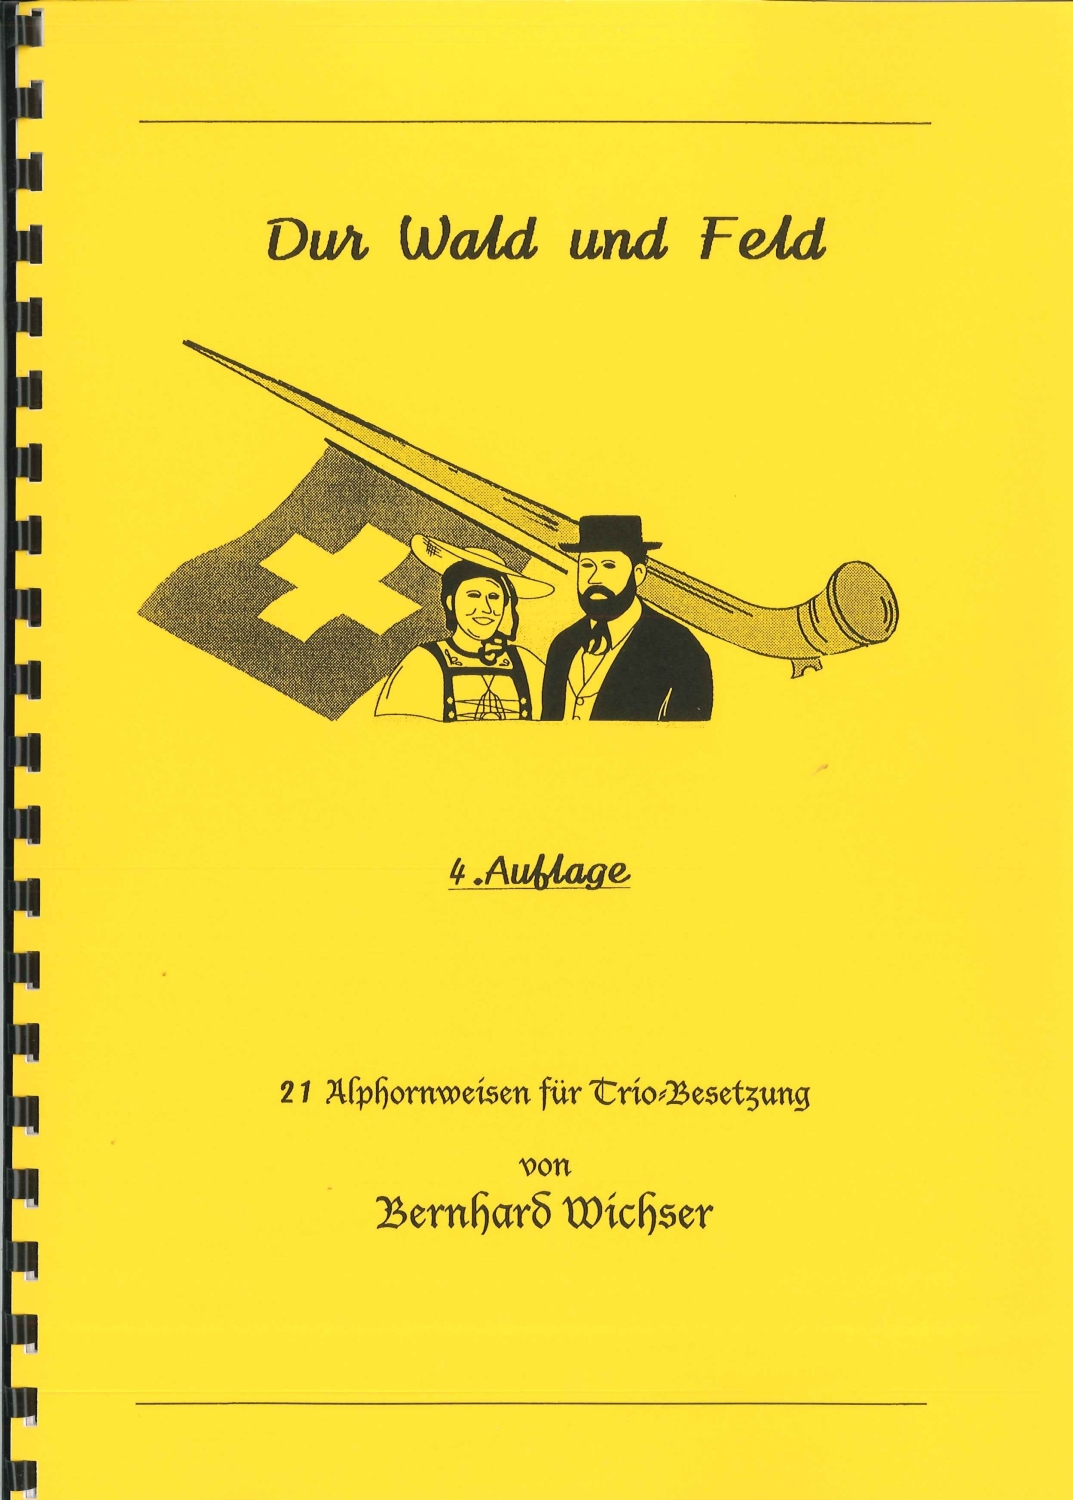 Bernhard-Wichser-Dur-Wald-und-Feld-3Alph-_0001.JPG